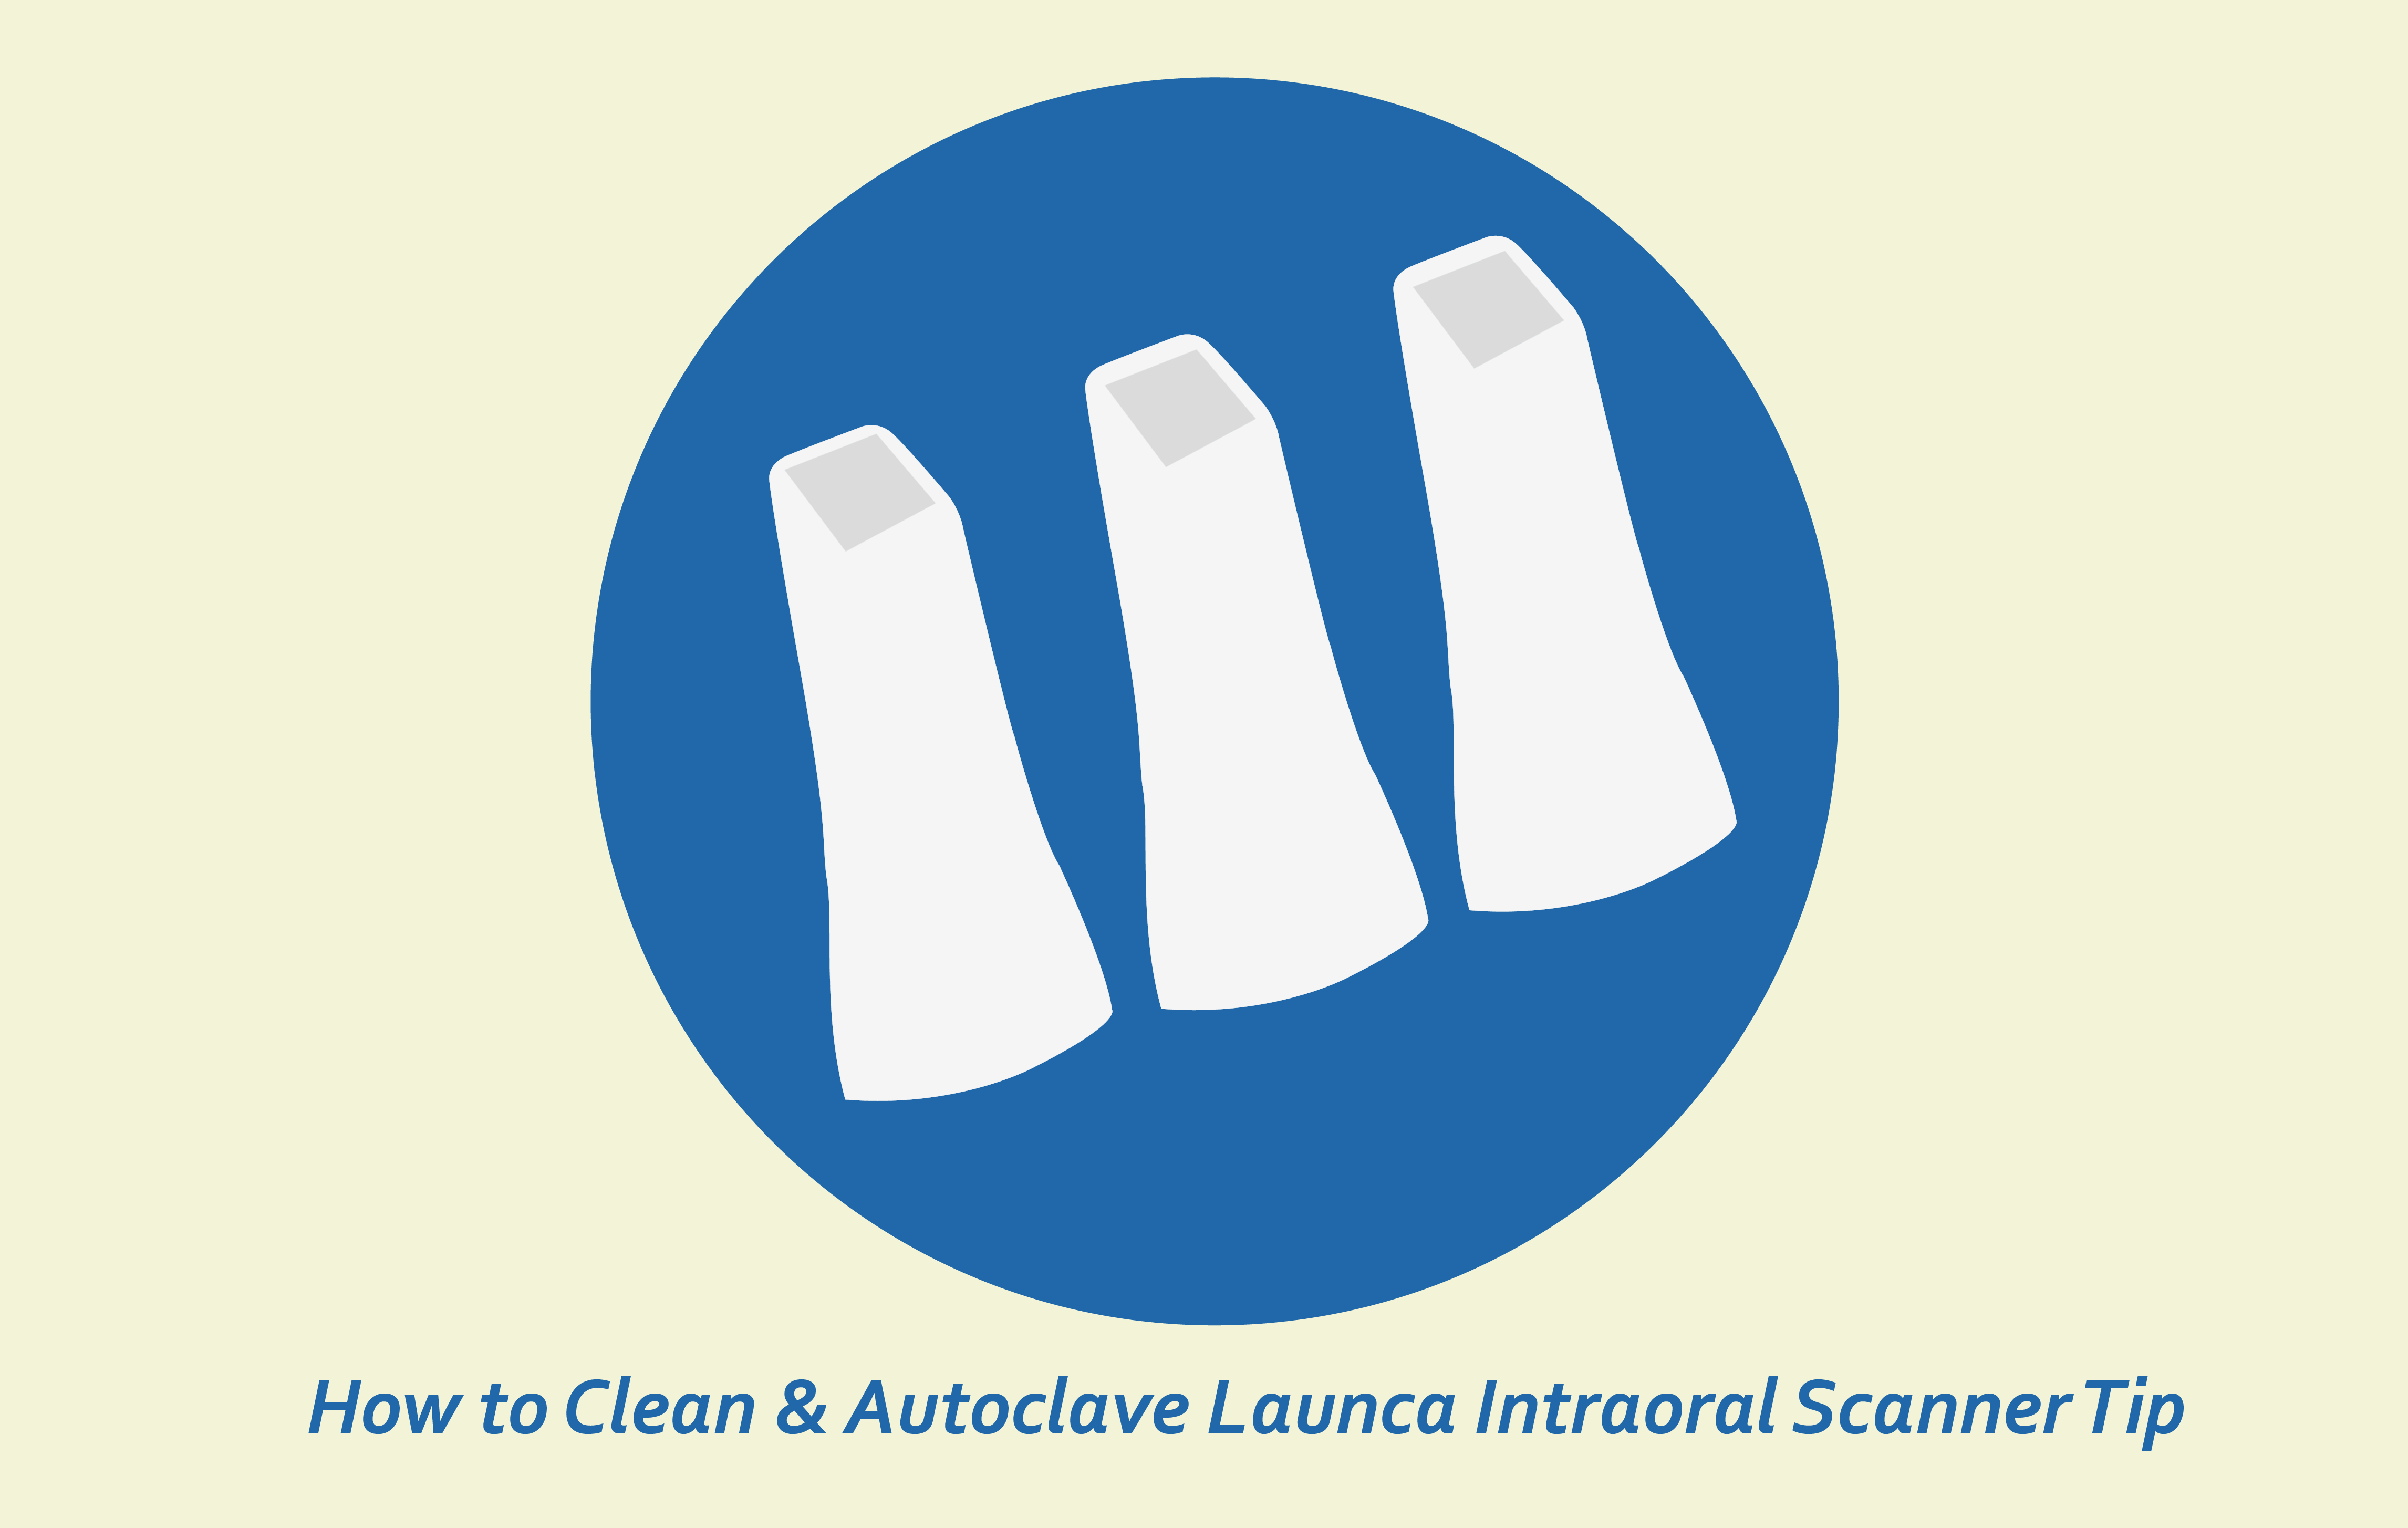 Sådan rengøres og steriliseres Launca Intraoral Scanner Tips